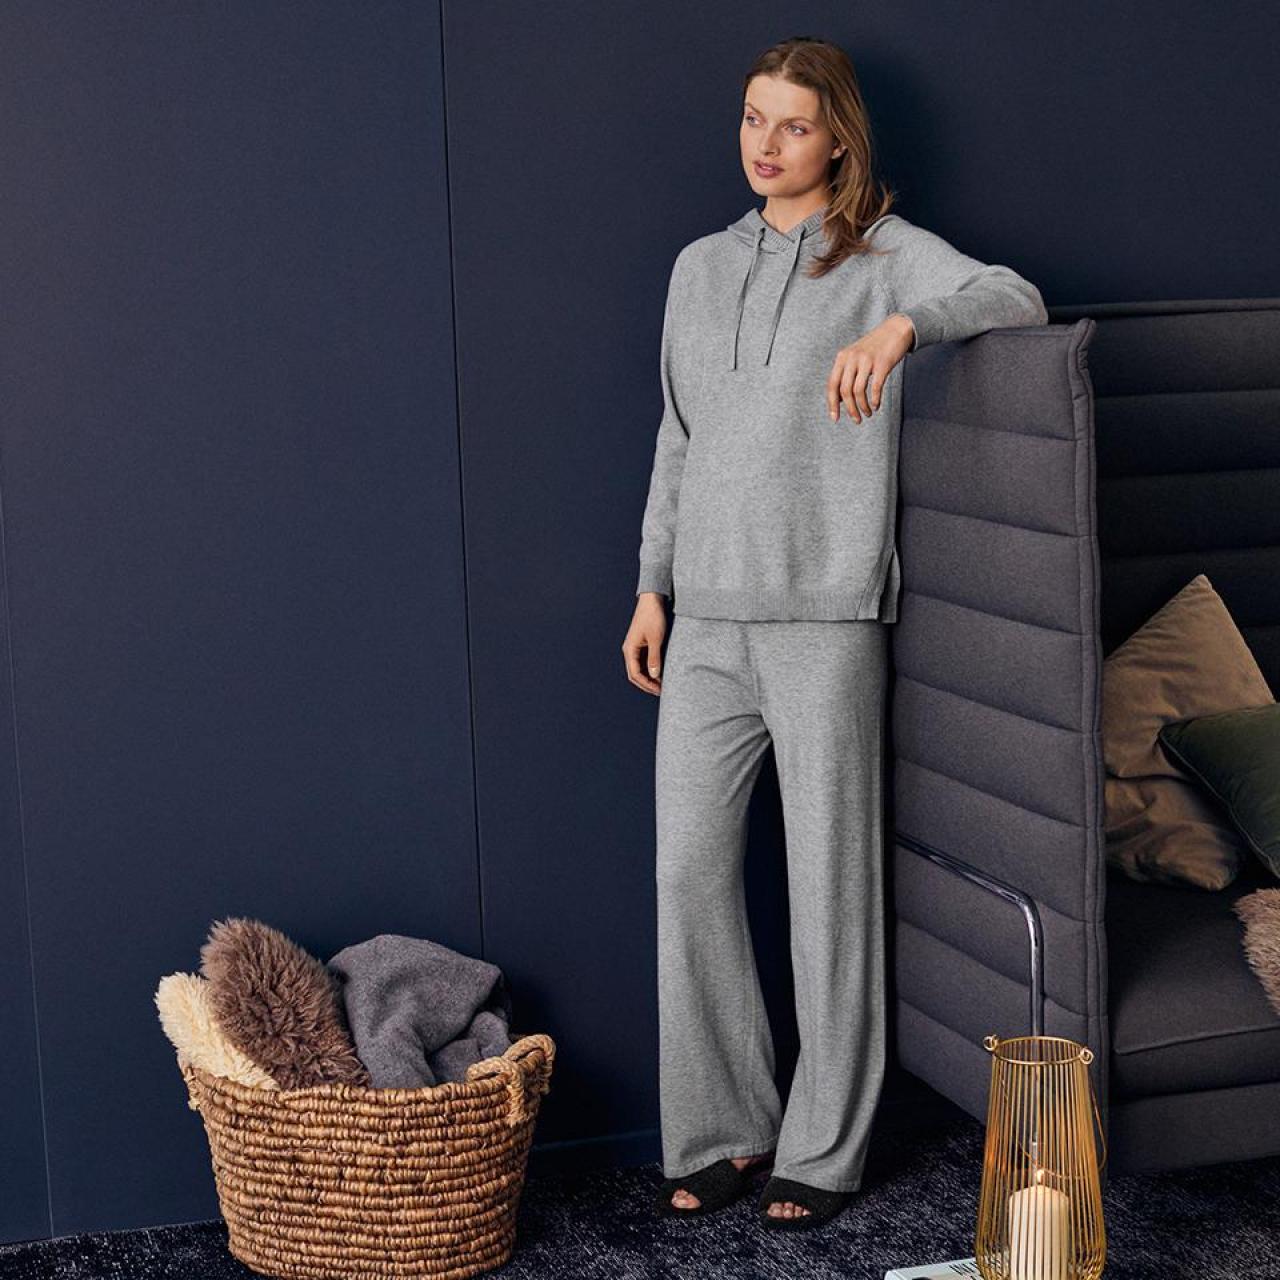 Knusse homewearStijlvolle homewear om de lange winteravonden in alle comfort door te brengen (pull 69,90 euro, broek 59,90 euro), van Betty Barclay.